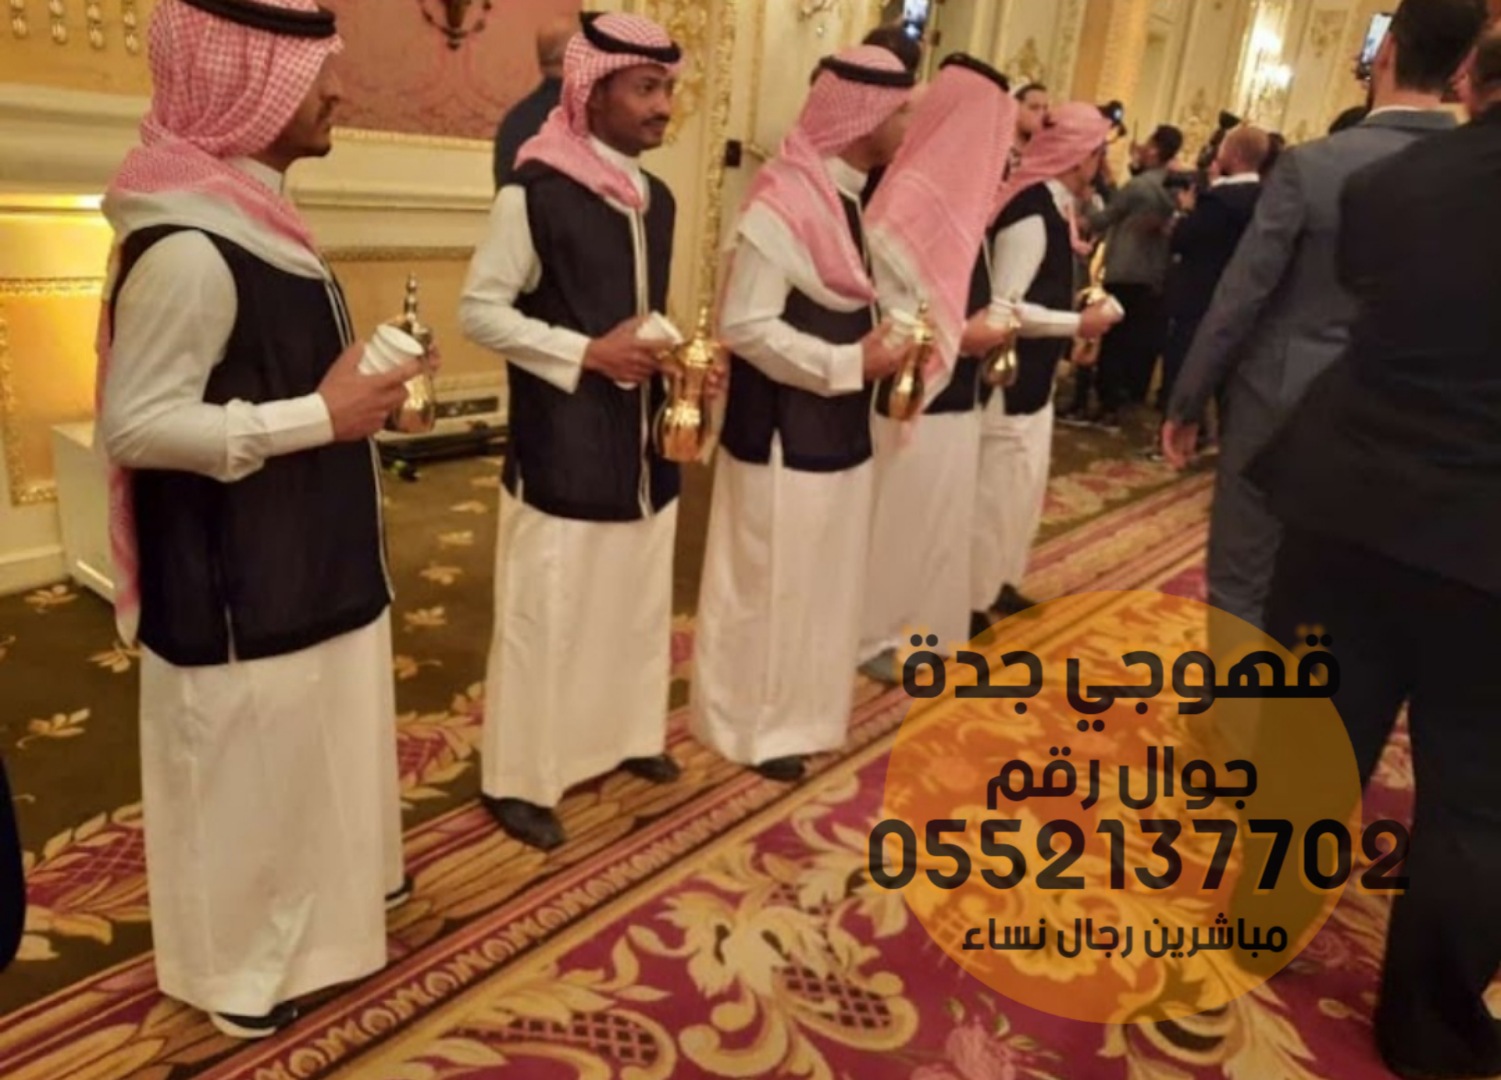 Hospitalité en direct de Qahwaji Sababin à Djeddah 0552137702